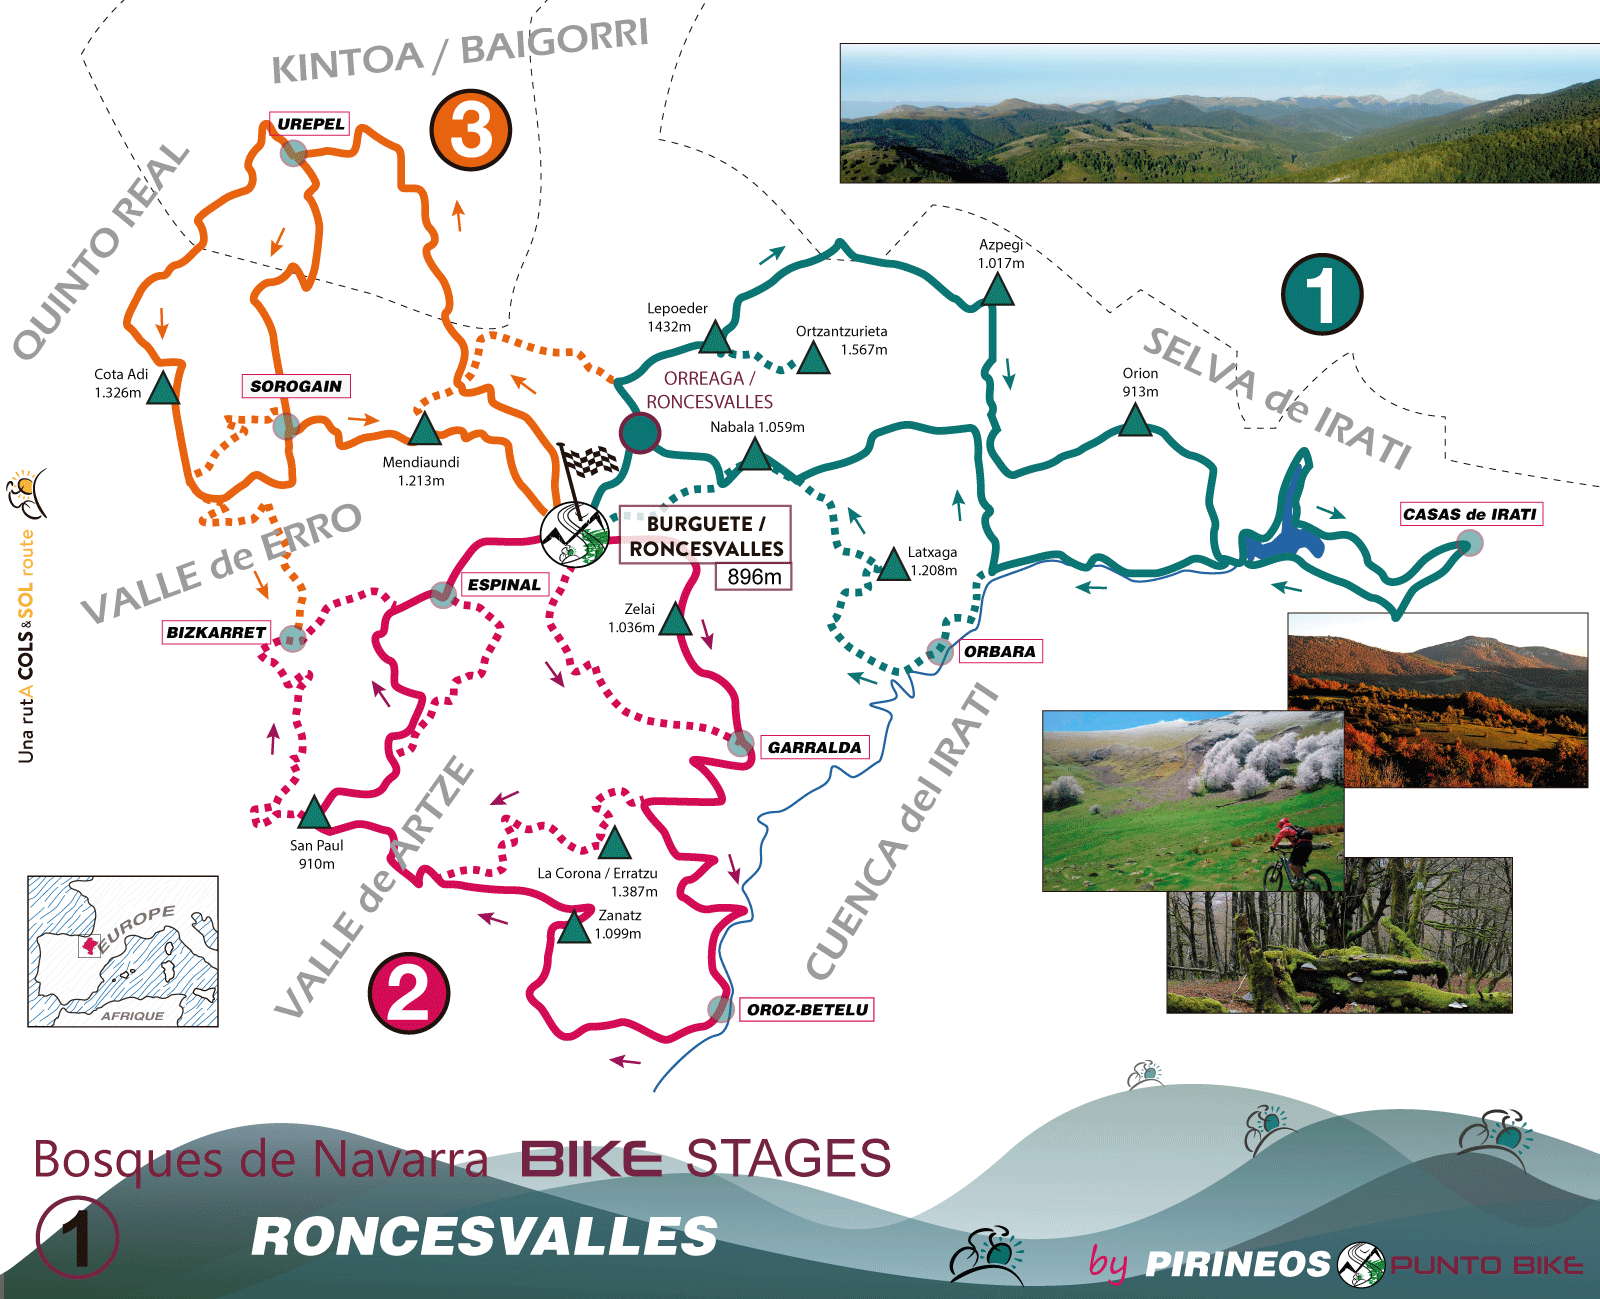 Bosques-de-Navarra-1-Roncesvalles-Mapa